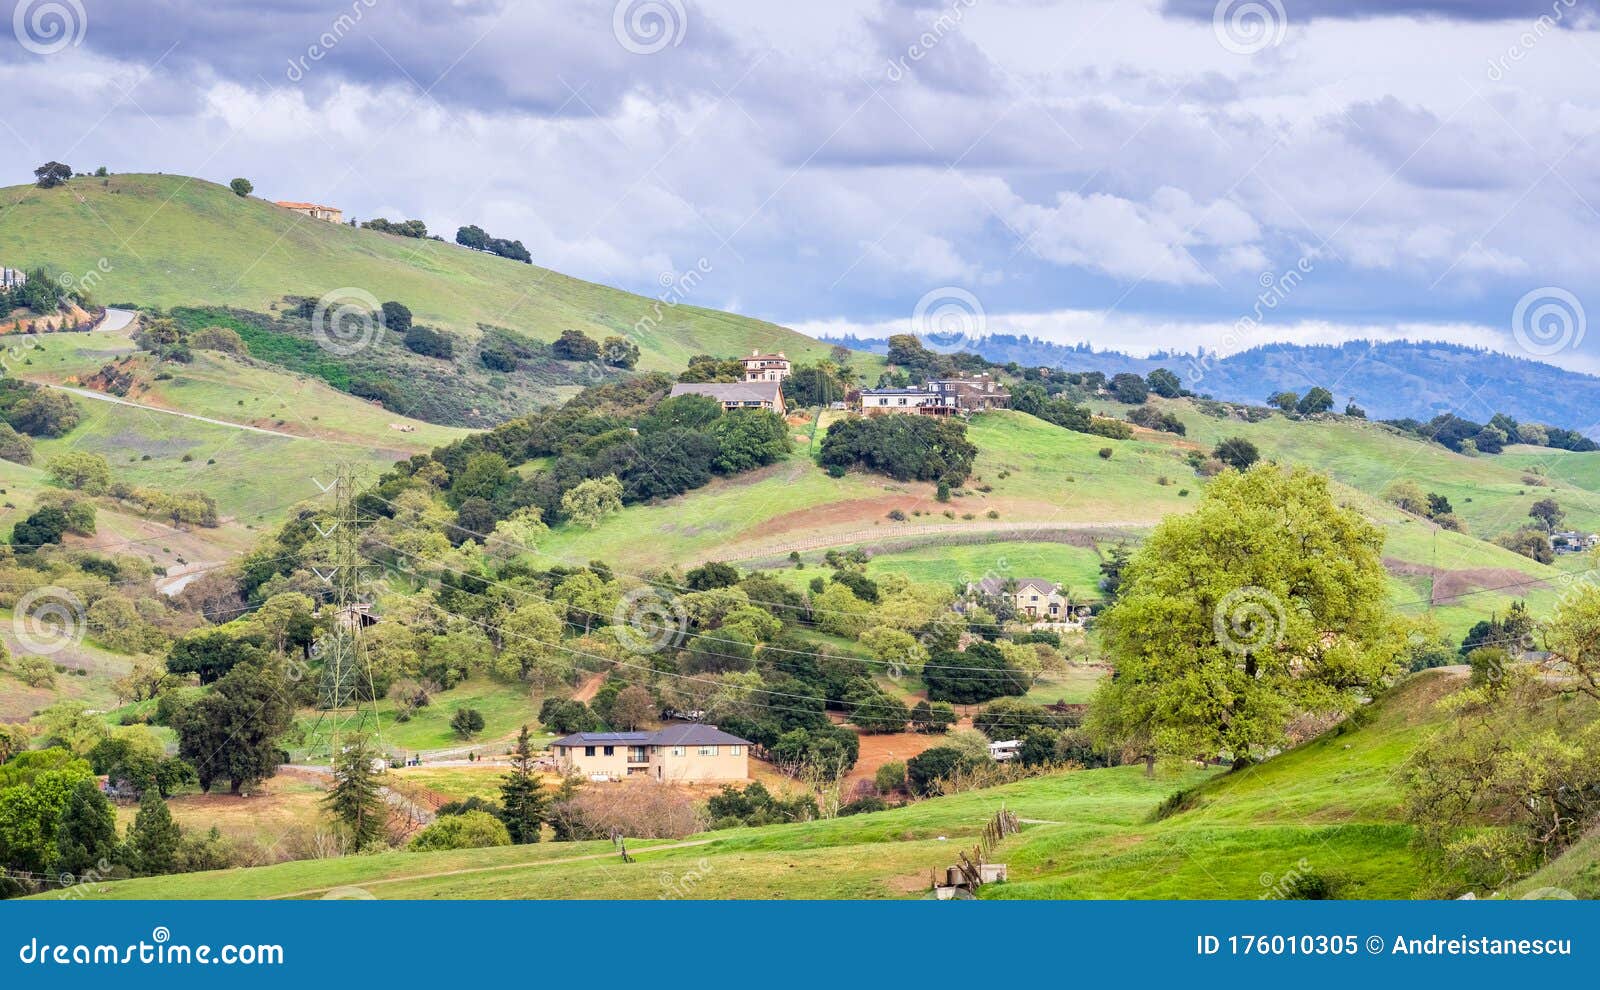 Santa Clara Valley by Mountain Dreams